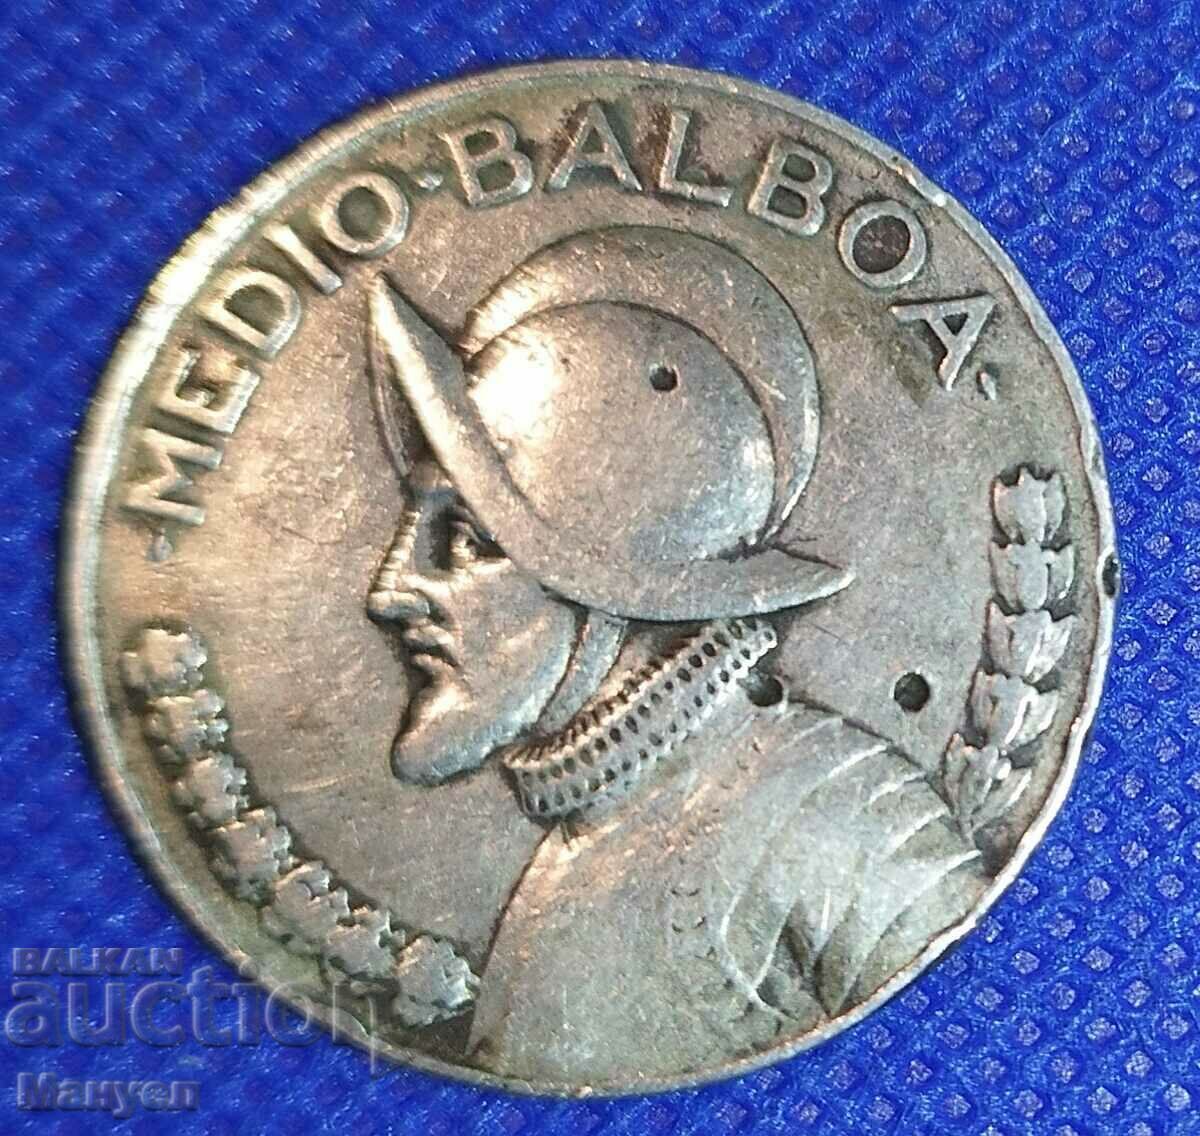 1/2 Balboa, Panama, argint, 1947.